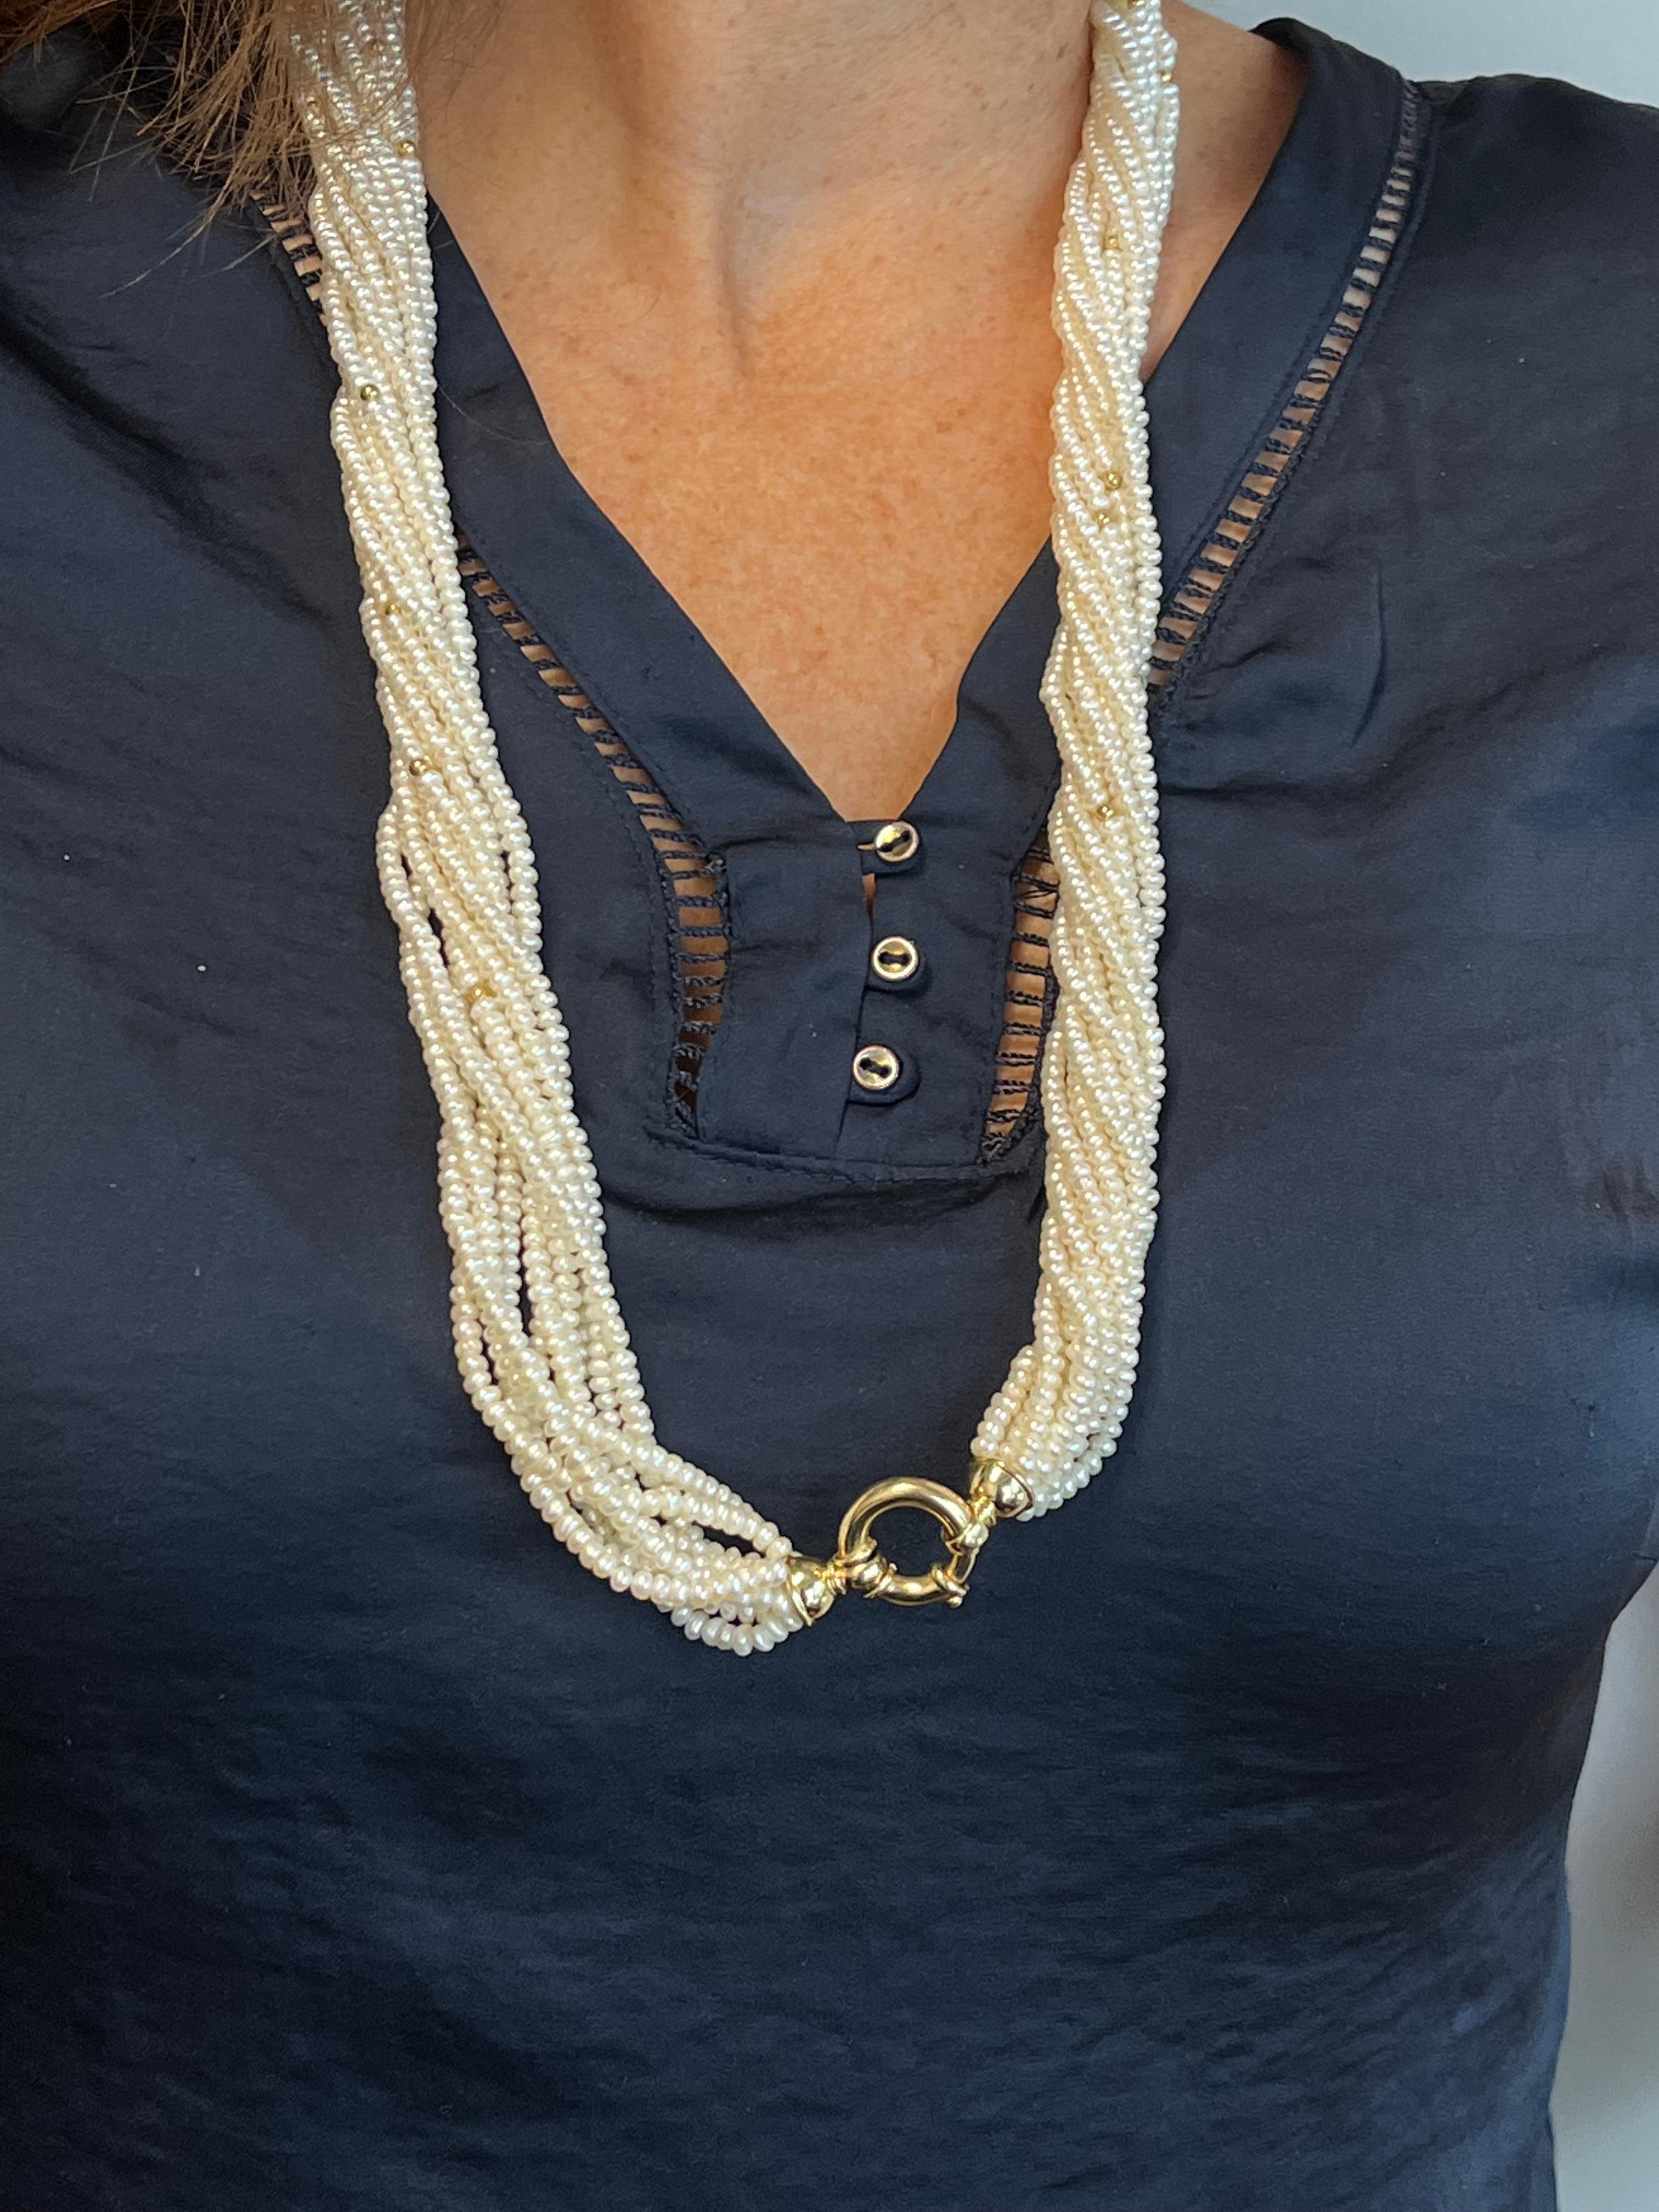  Vintage ByCA 1980 Collier de perles à 10 brins avec or jaune 14K .

Rehaussez votre collection avec cet exceptionnel collier vintage de perles d'eau douce à 10 brins. Orné de délicates perles bouton de 3,50 mm, le collier respire l'élégance et la